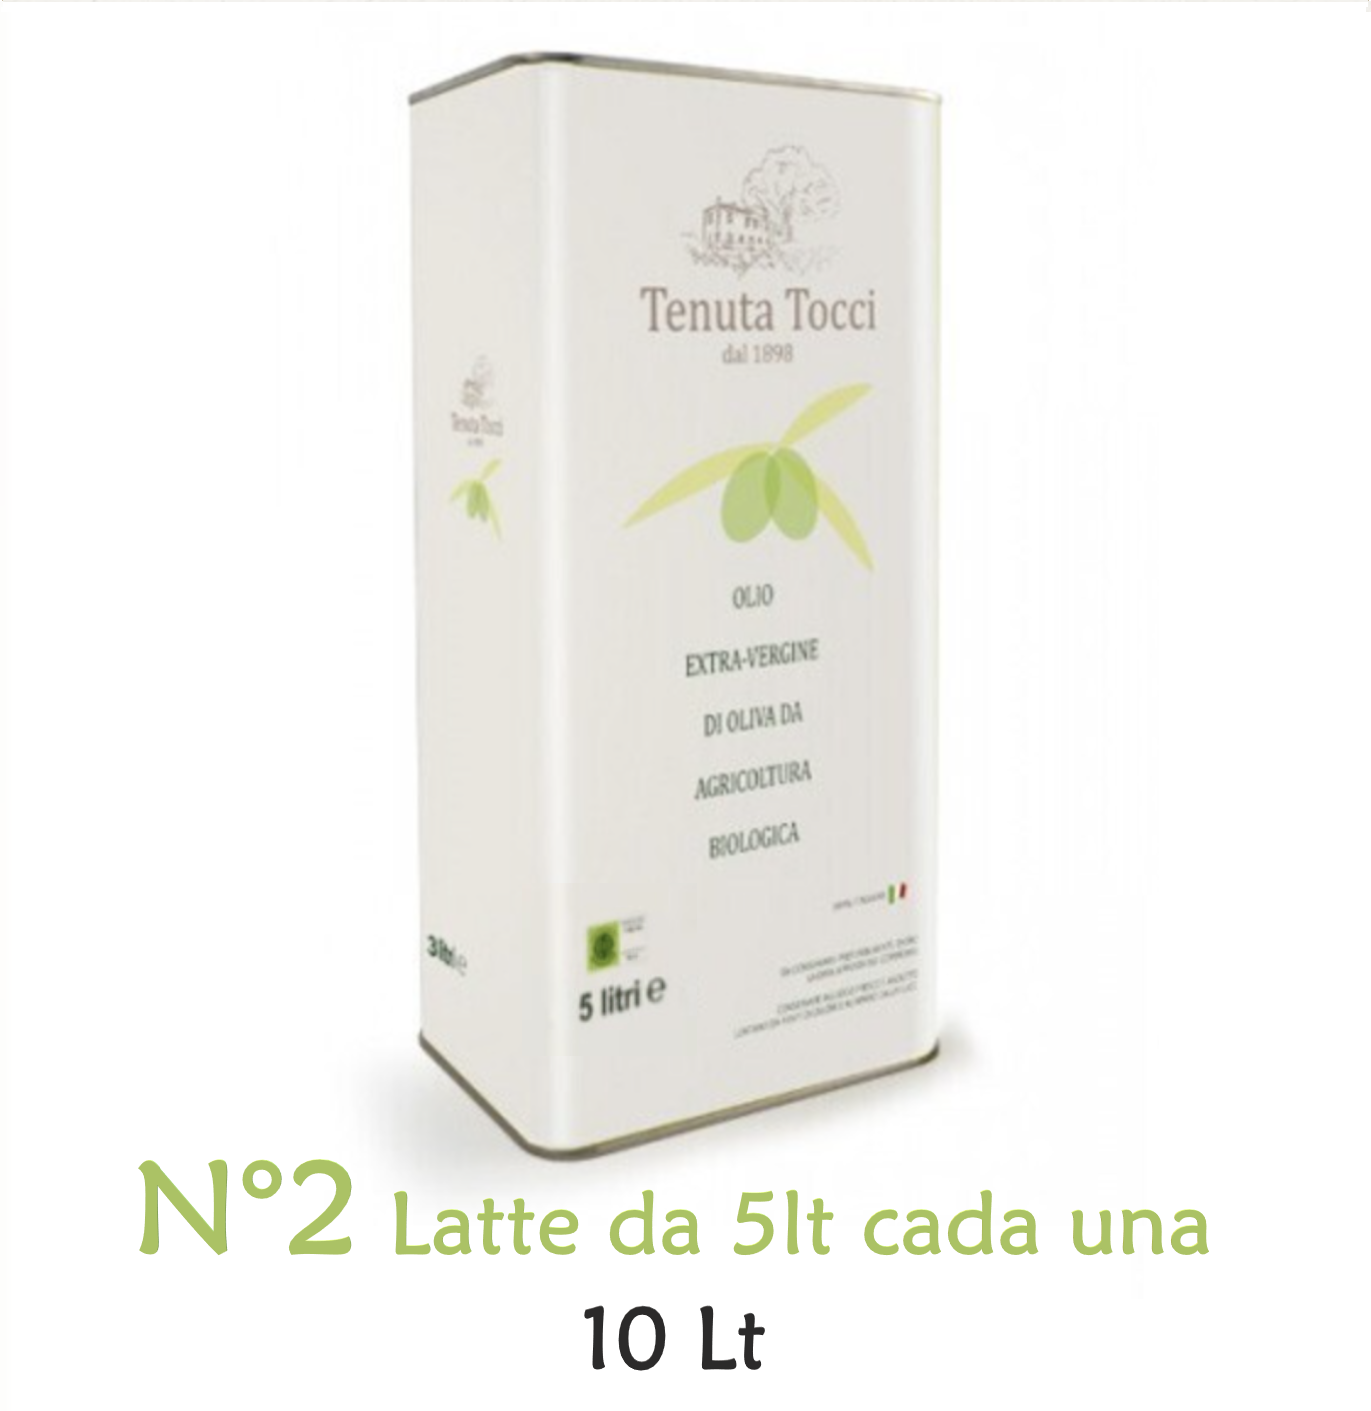 Confezione da 10Lt - di Olio extravergine di oliva biologico Tenuta Tocci - composta da N°2 Latte da 5Lt cadauna.